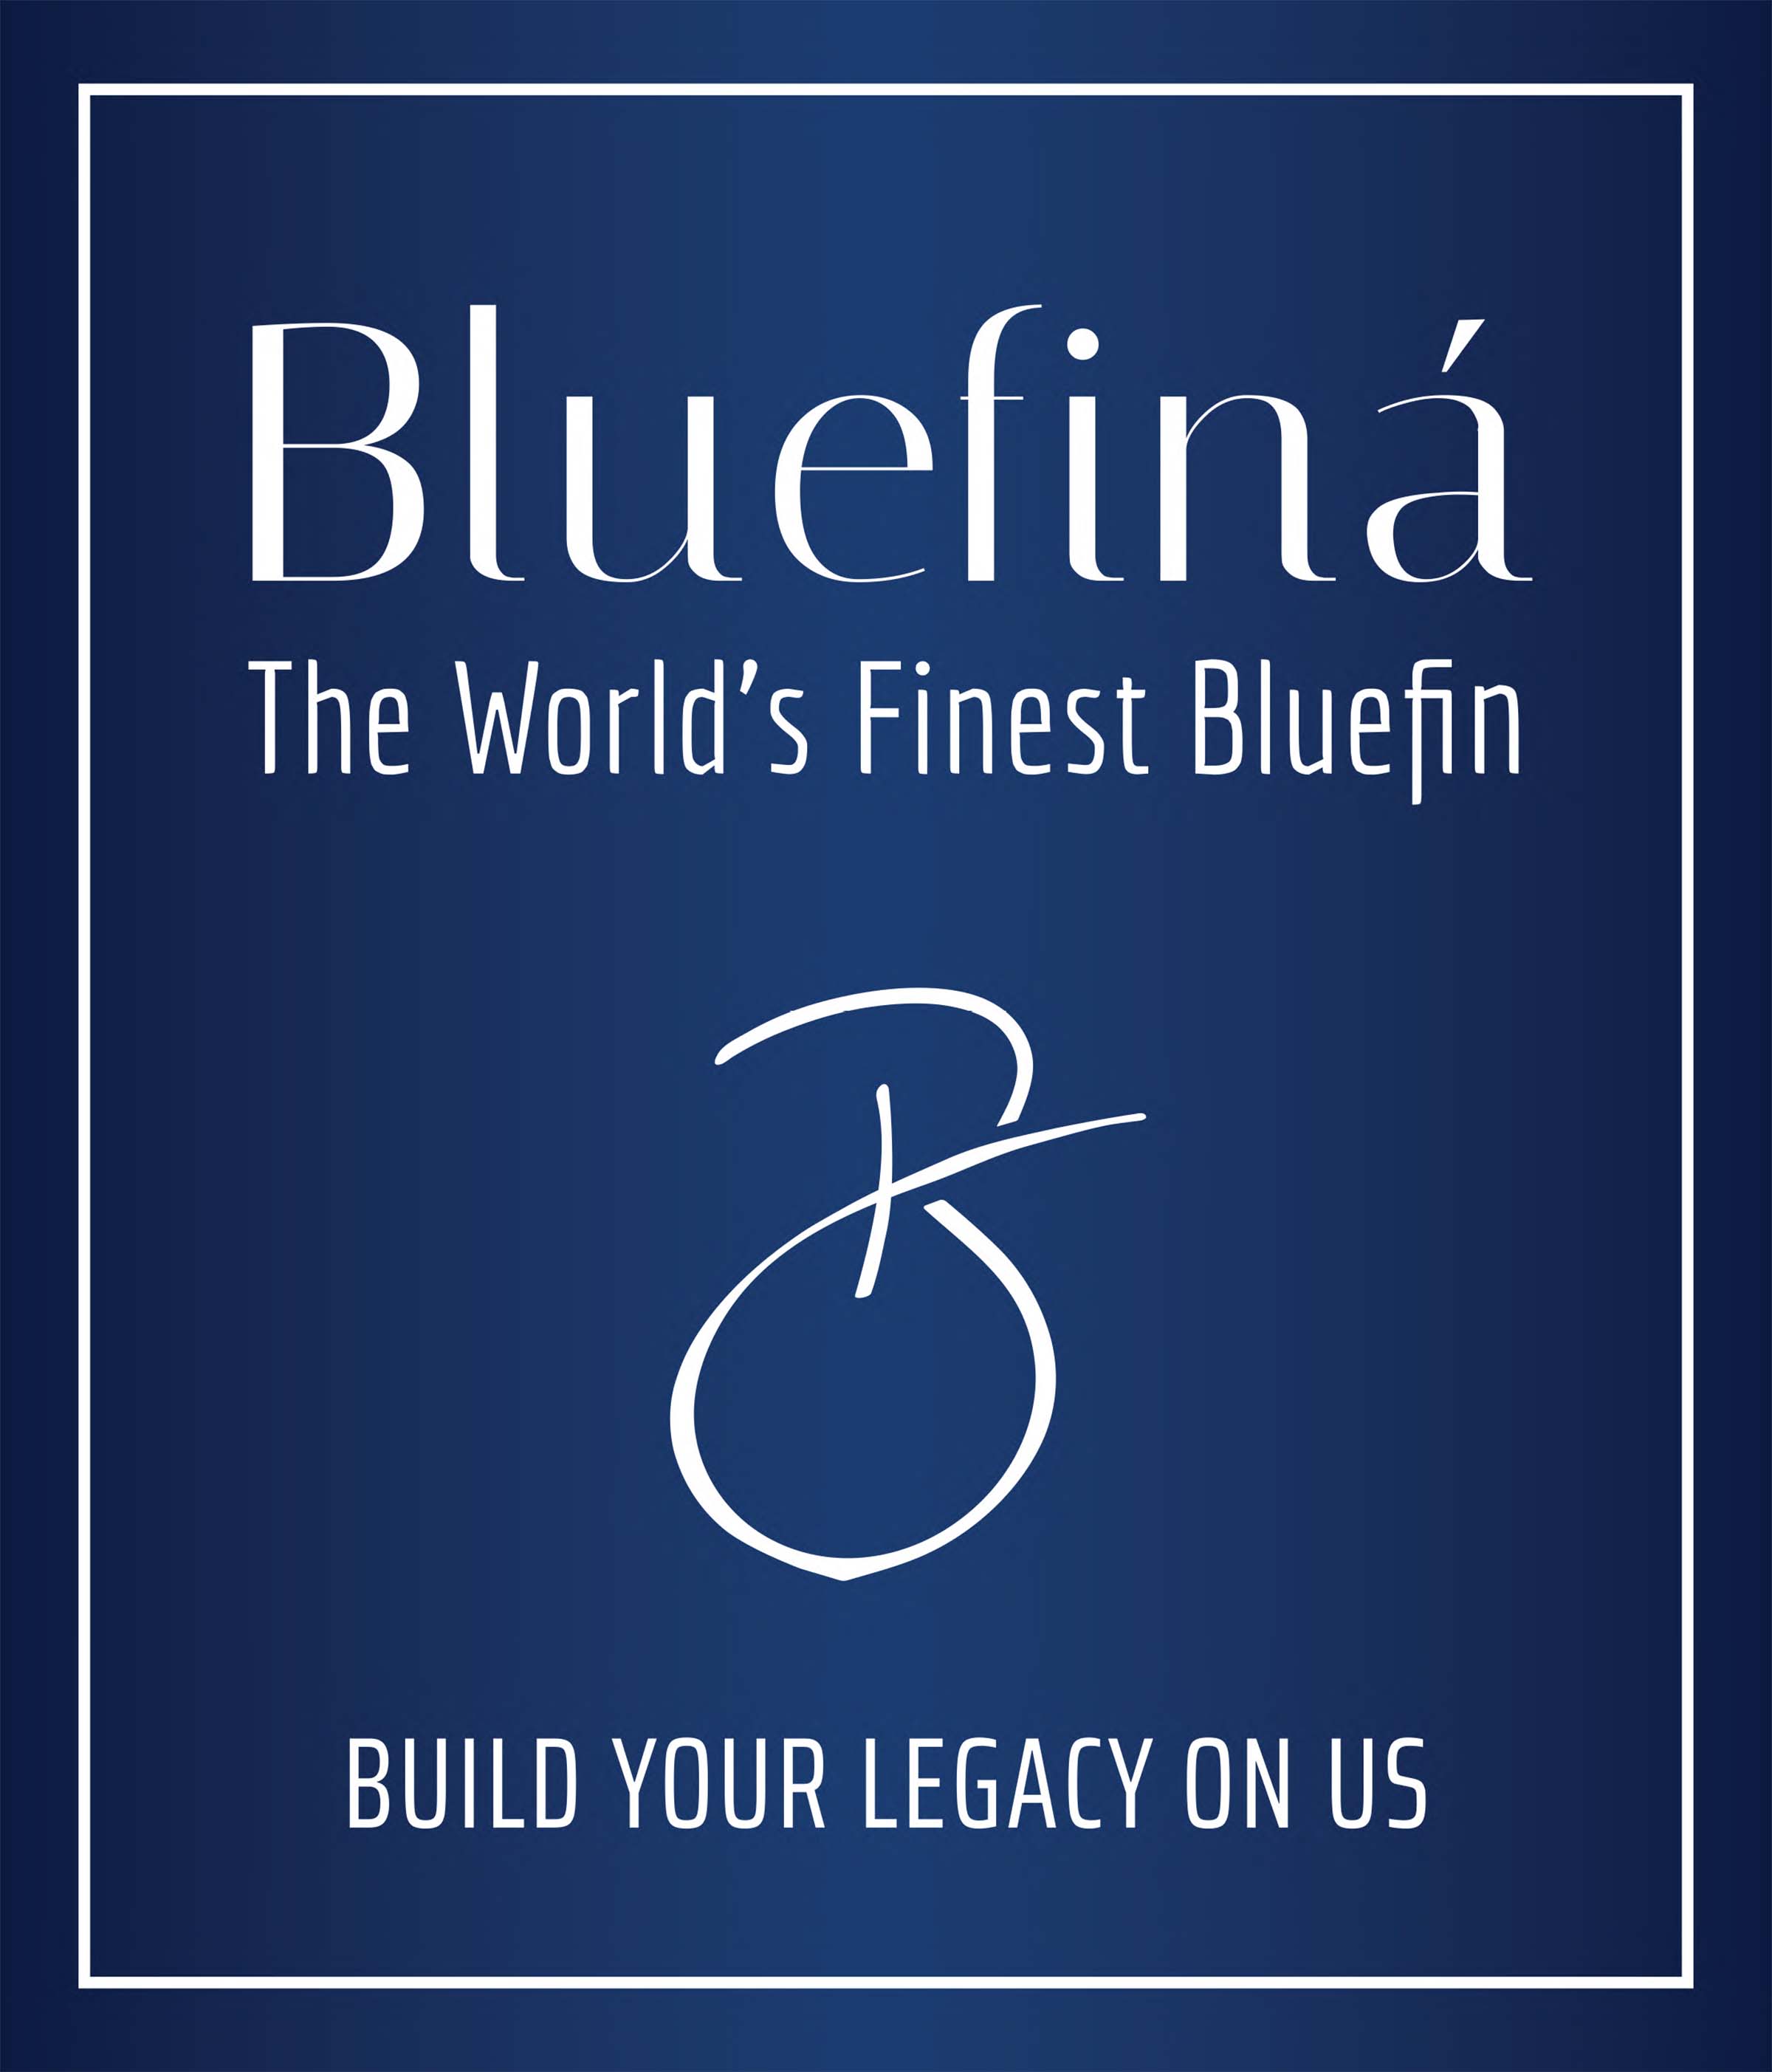 bluefina-logo-jpeg